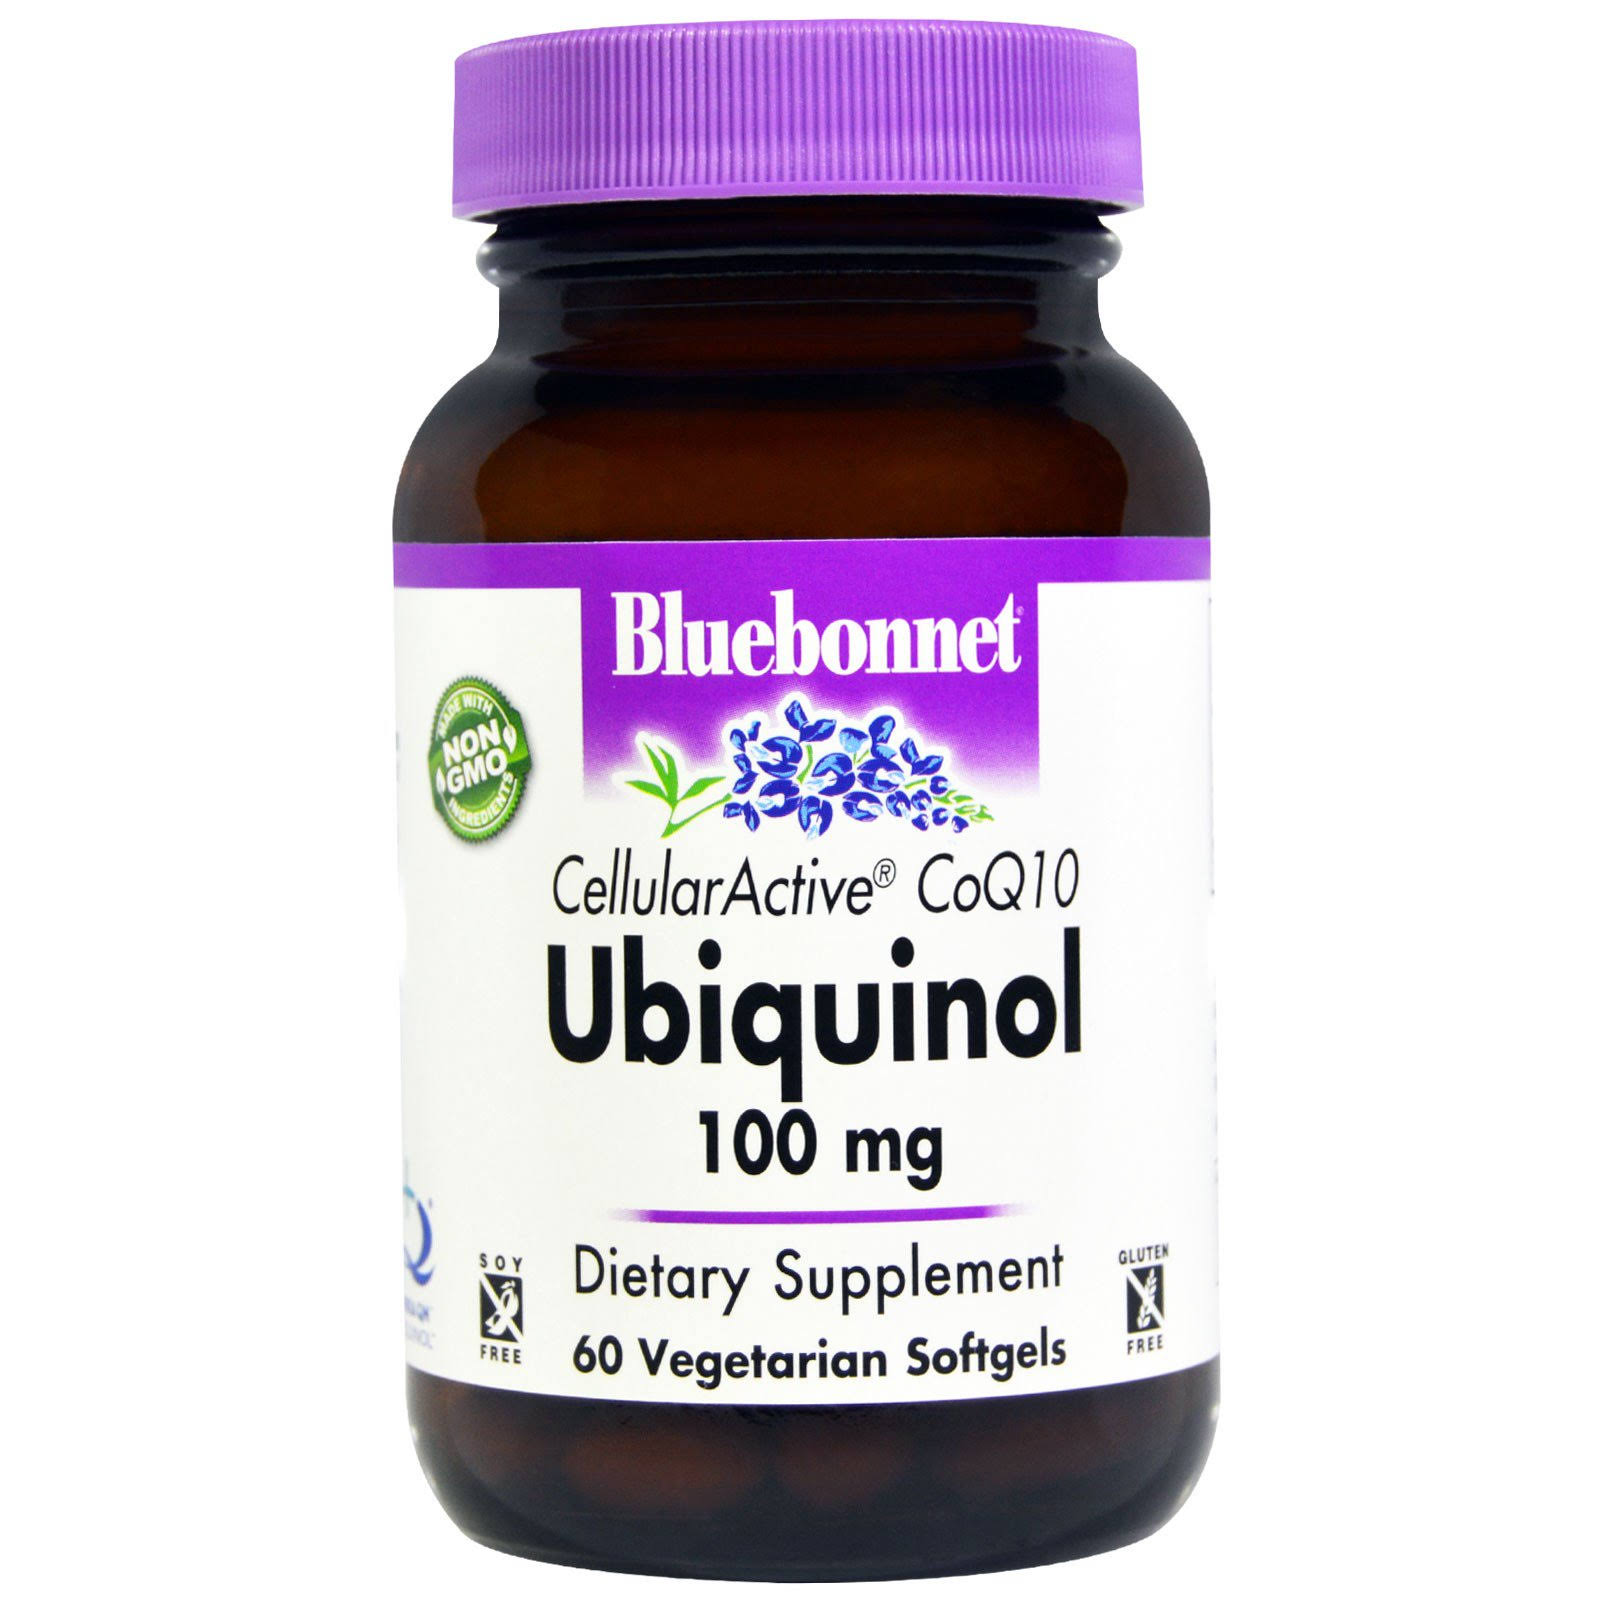 Bluebonnet Cellular Active CoQ10 Ubiquinol - 100mg, 60 Vegetarian Softgels